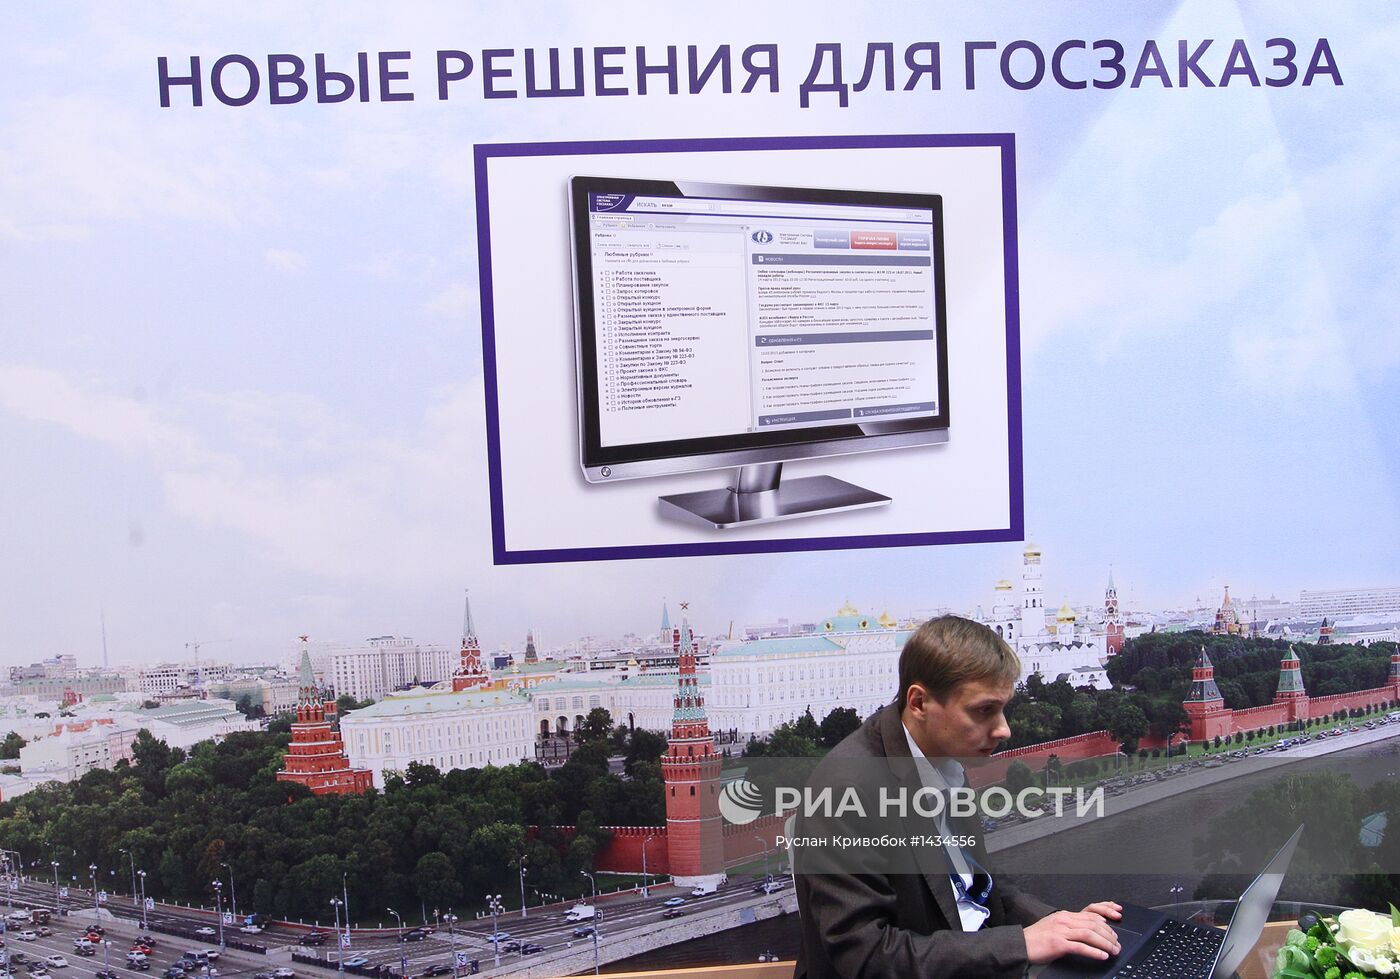 Всероссийский форум-выставка "Госзаказ-2013"